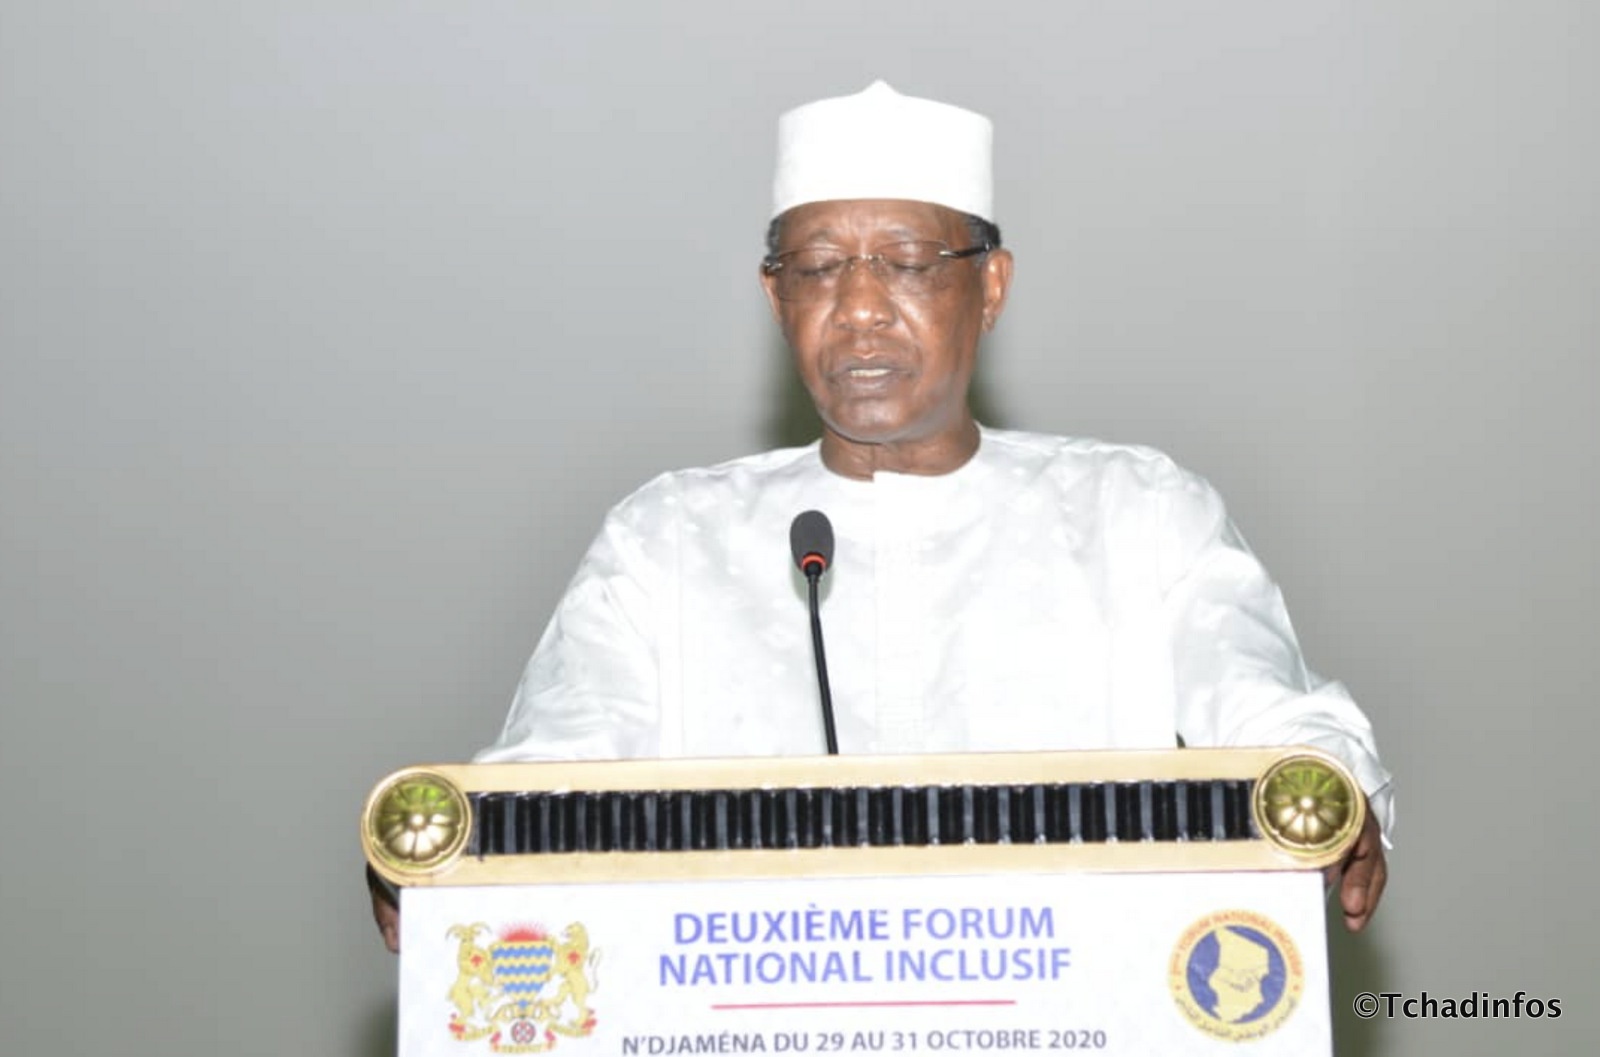 Forum National Inclusif : Idriss Deby Itno salue la création de la vice-présidence et du sénat